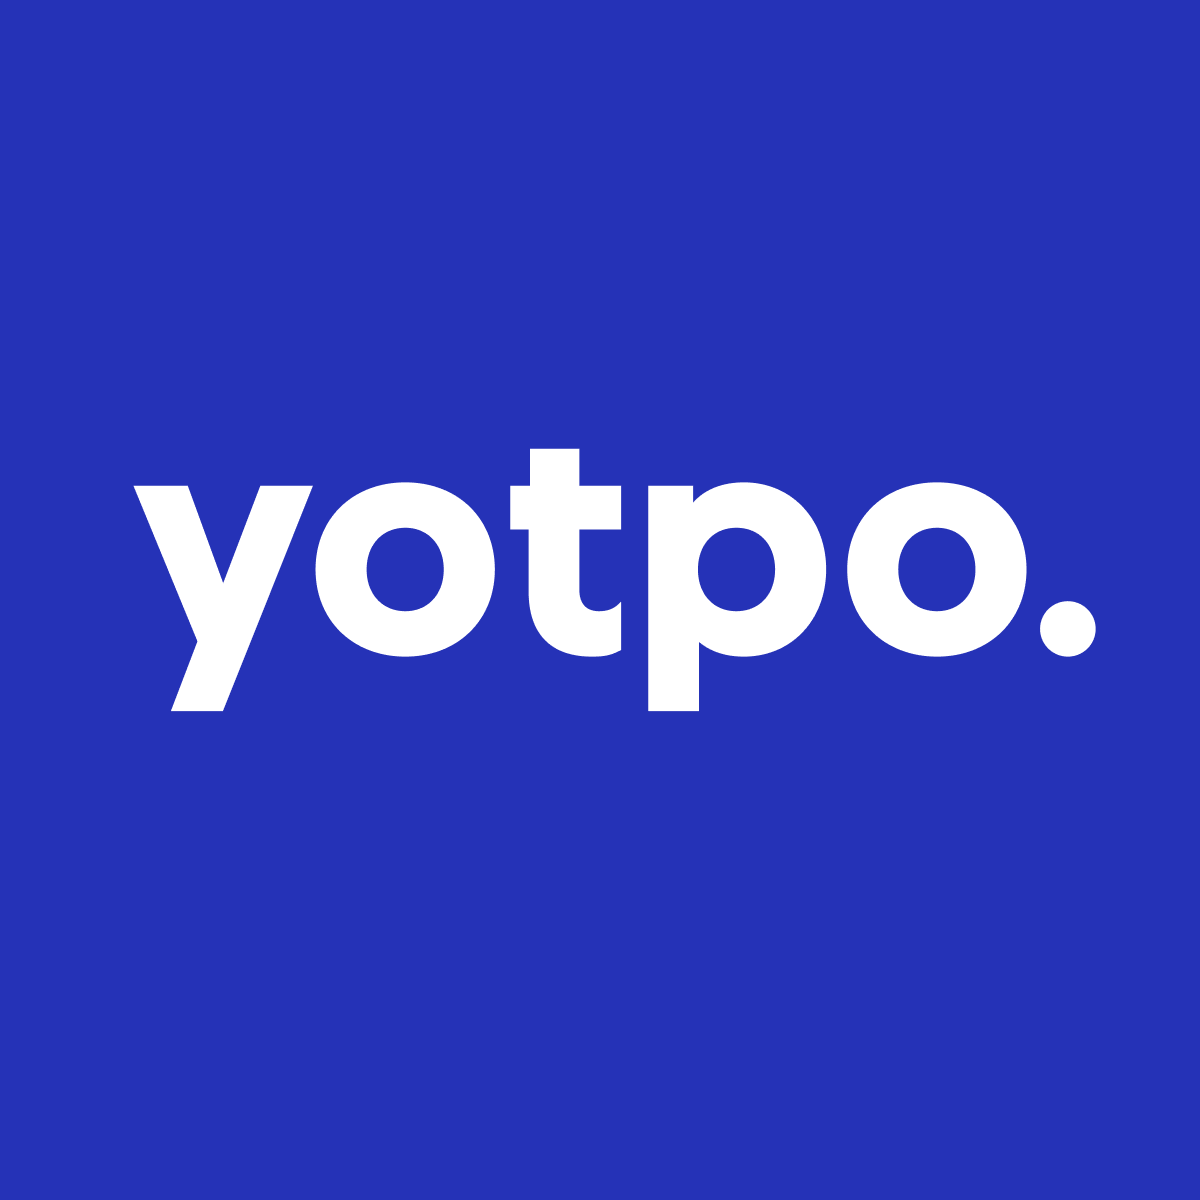 Loyalty & Rewards by Yotpo